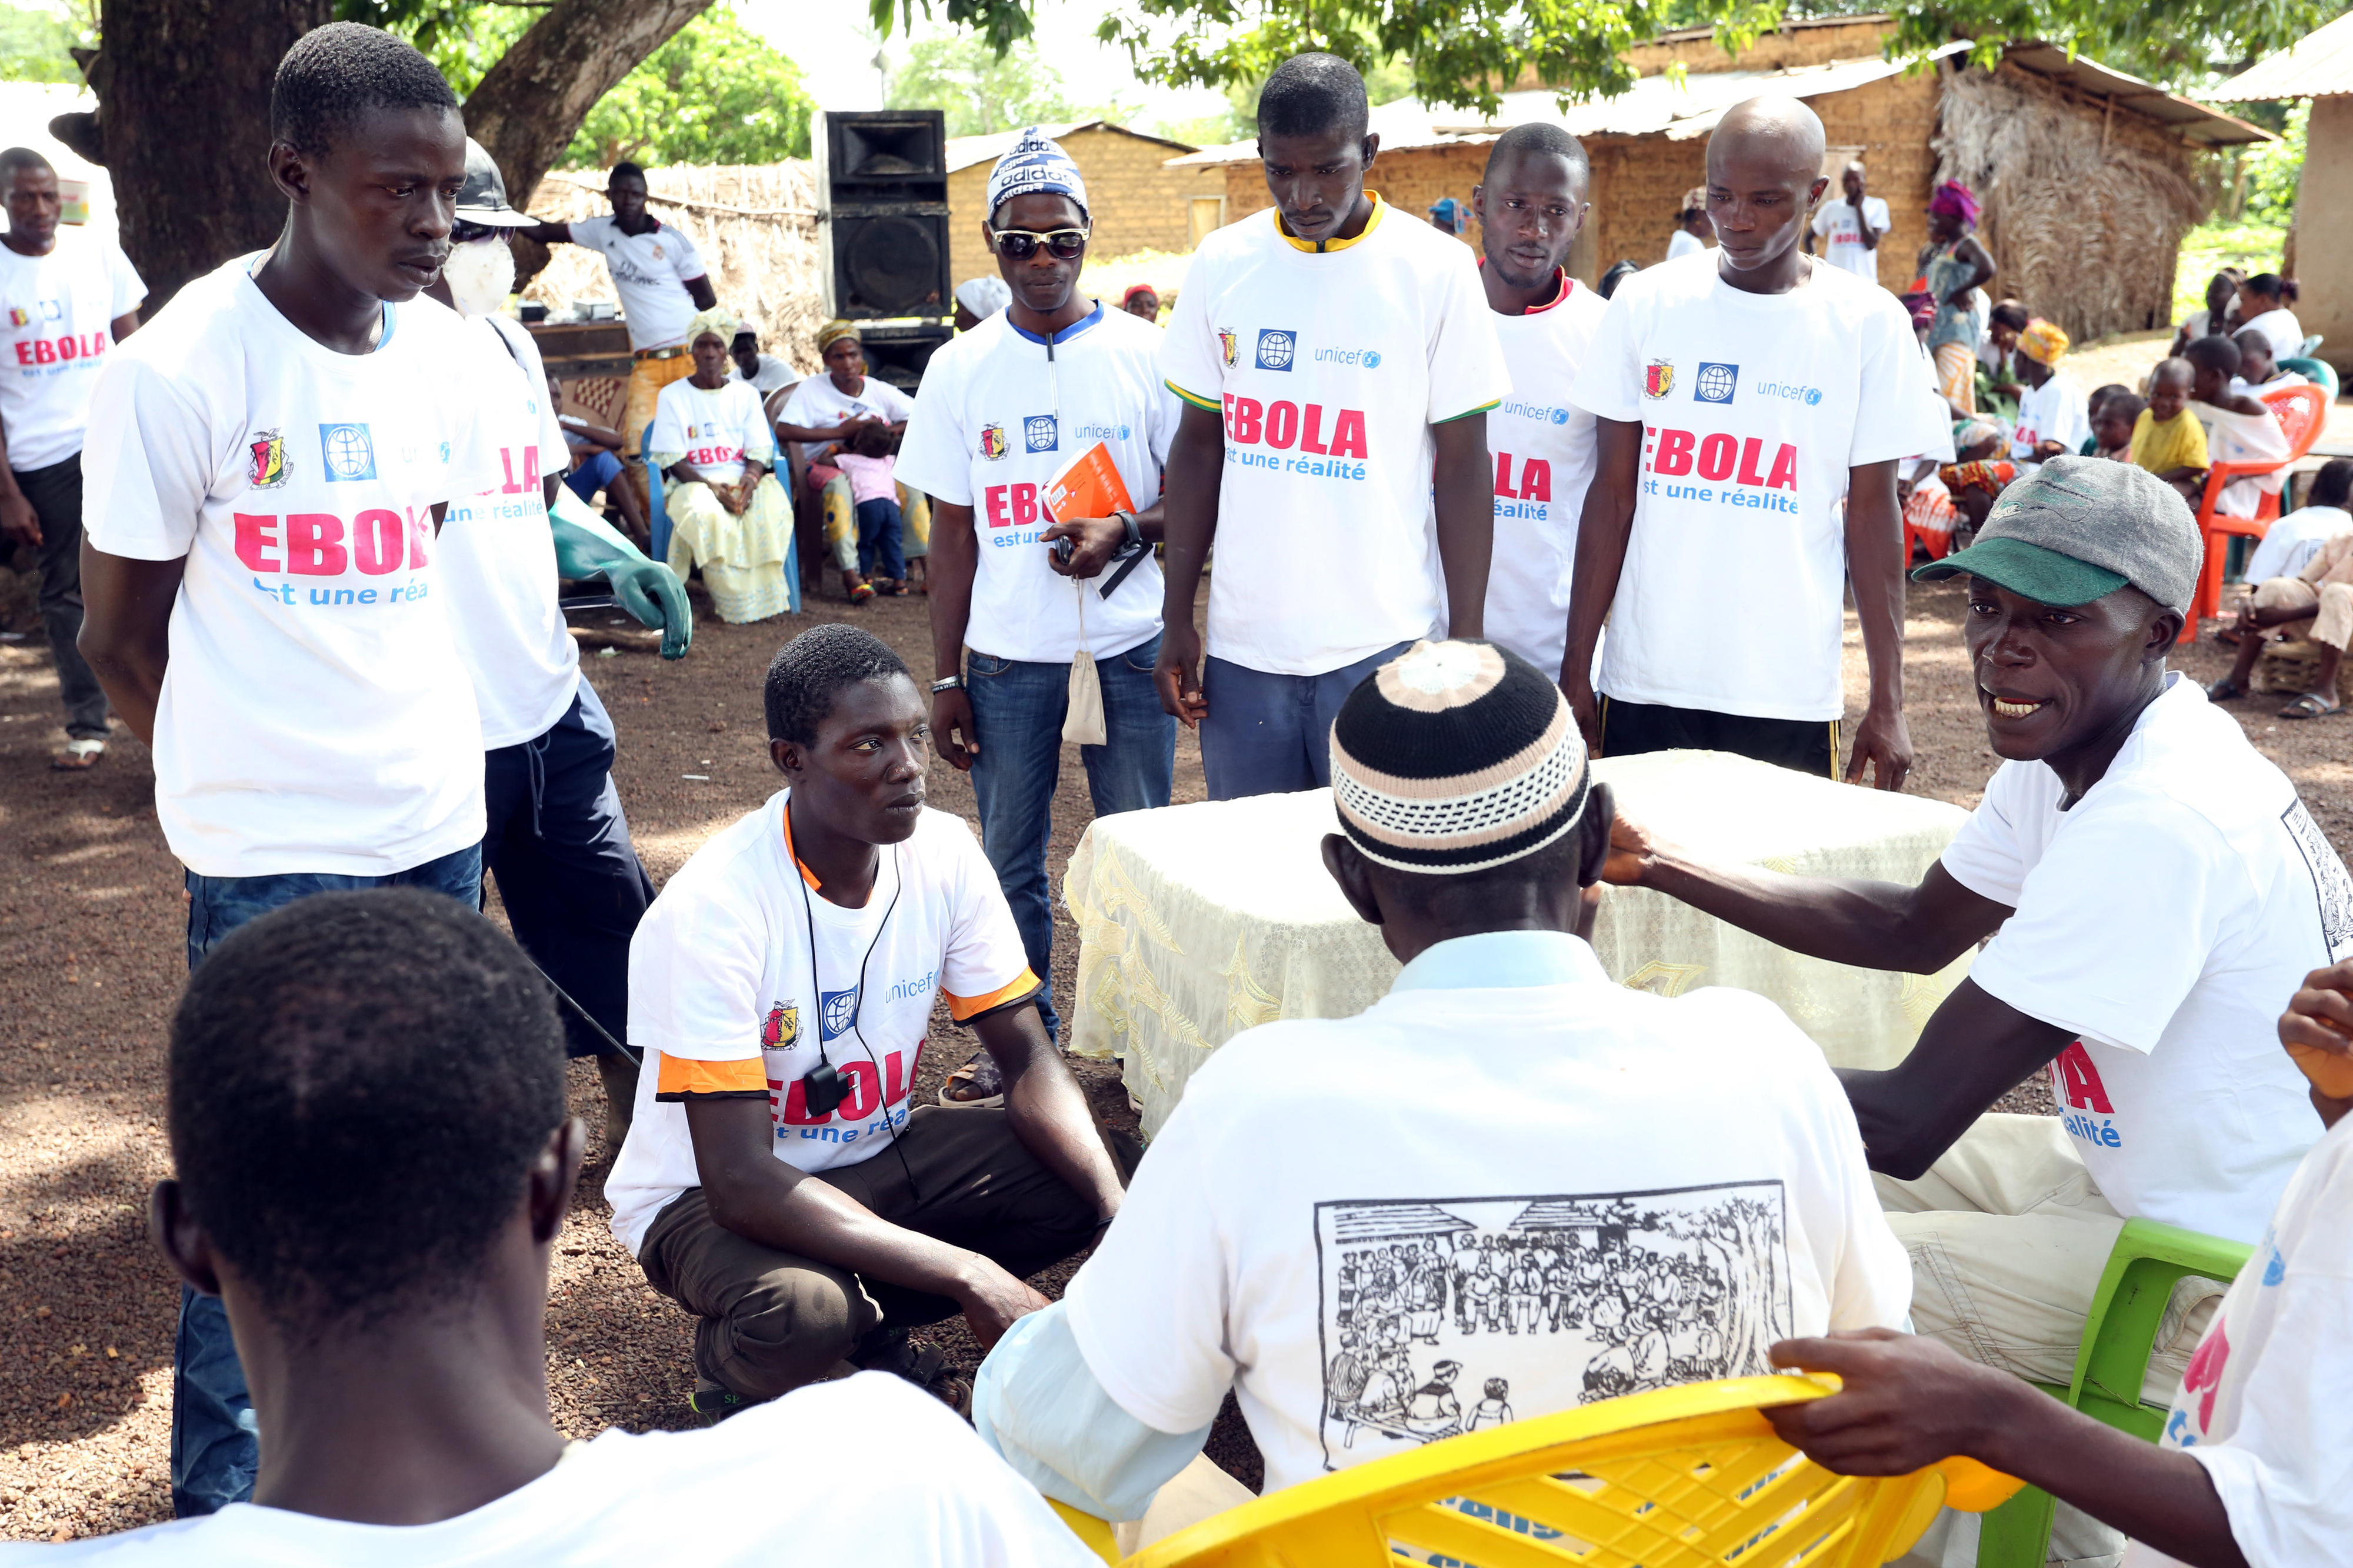 Informationsveranstaltung zum Thema Ebola in einem Dorf in Guinea